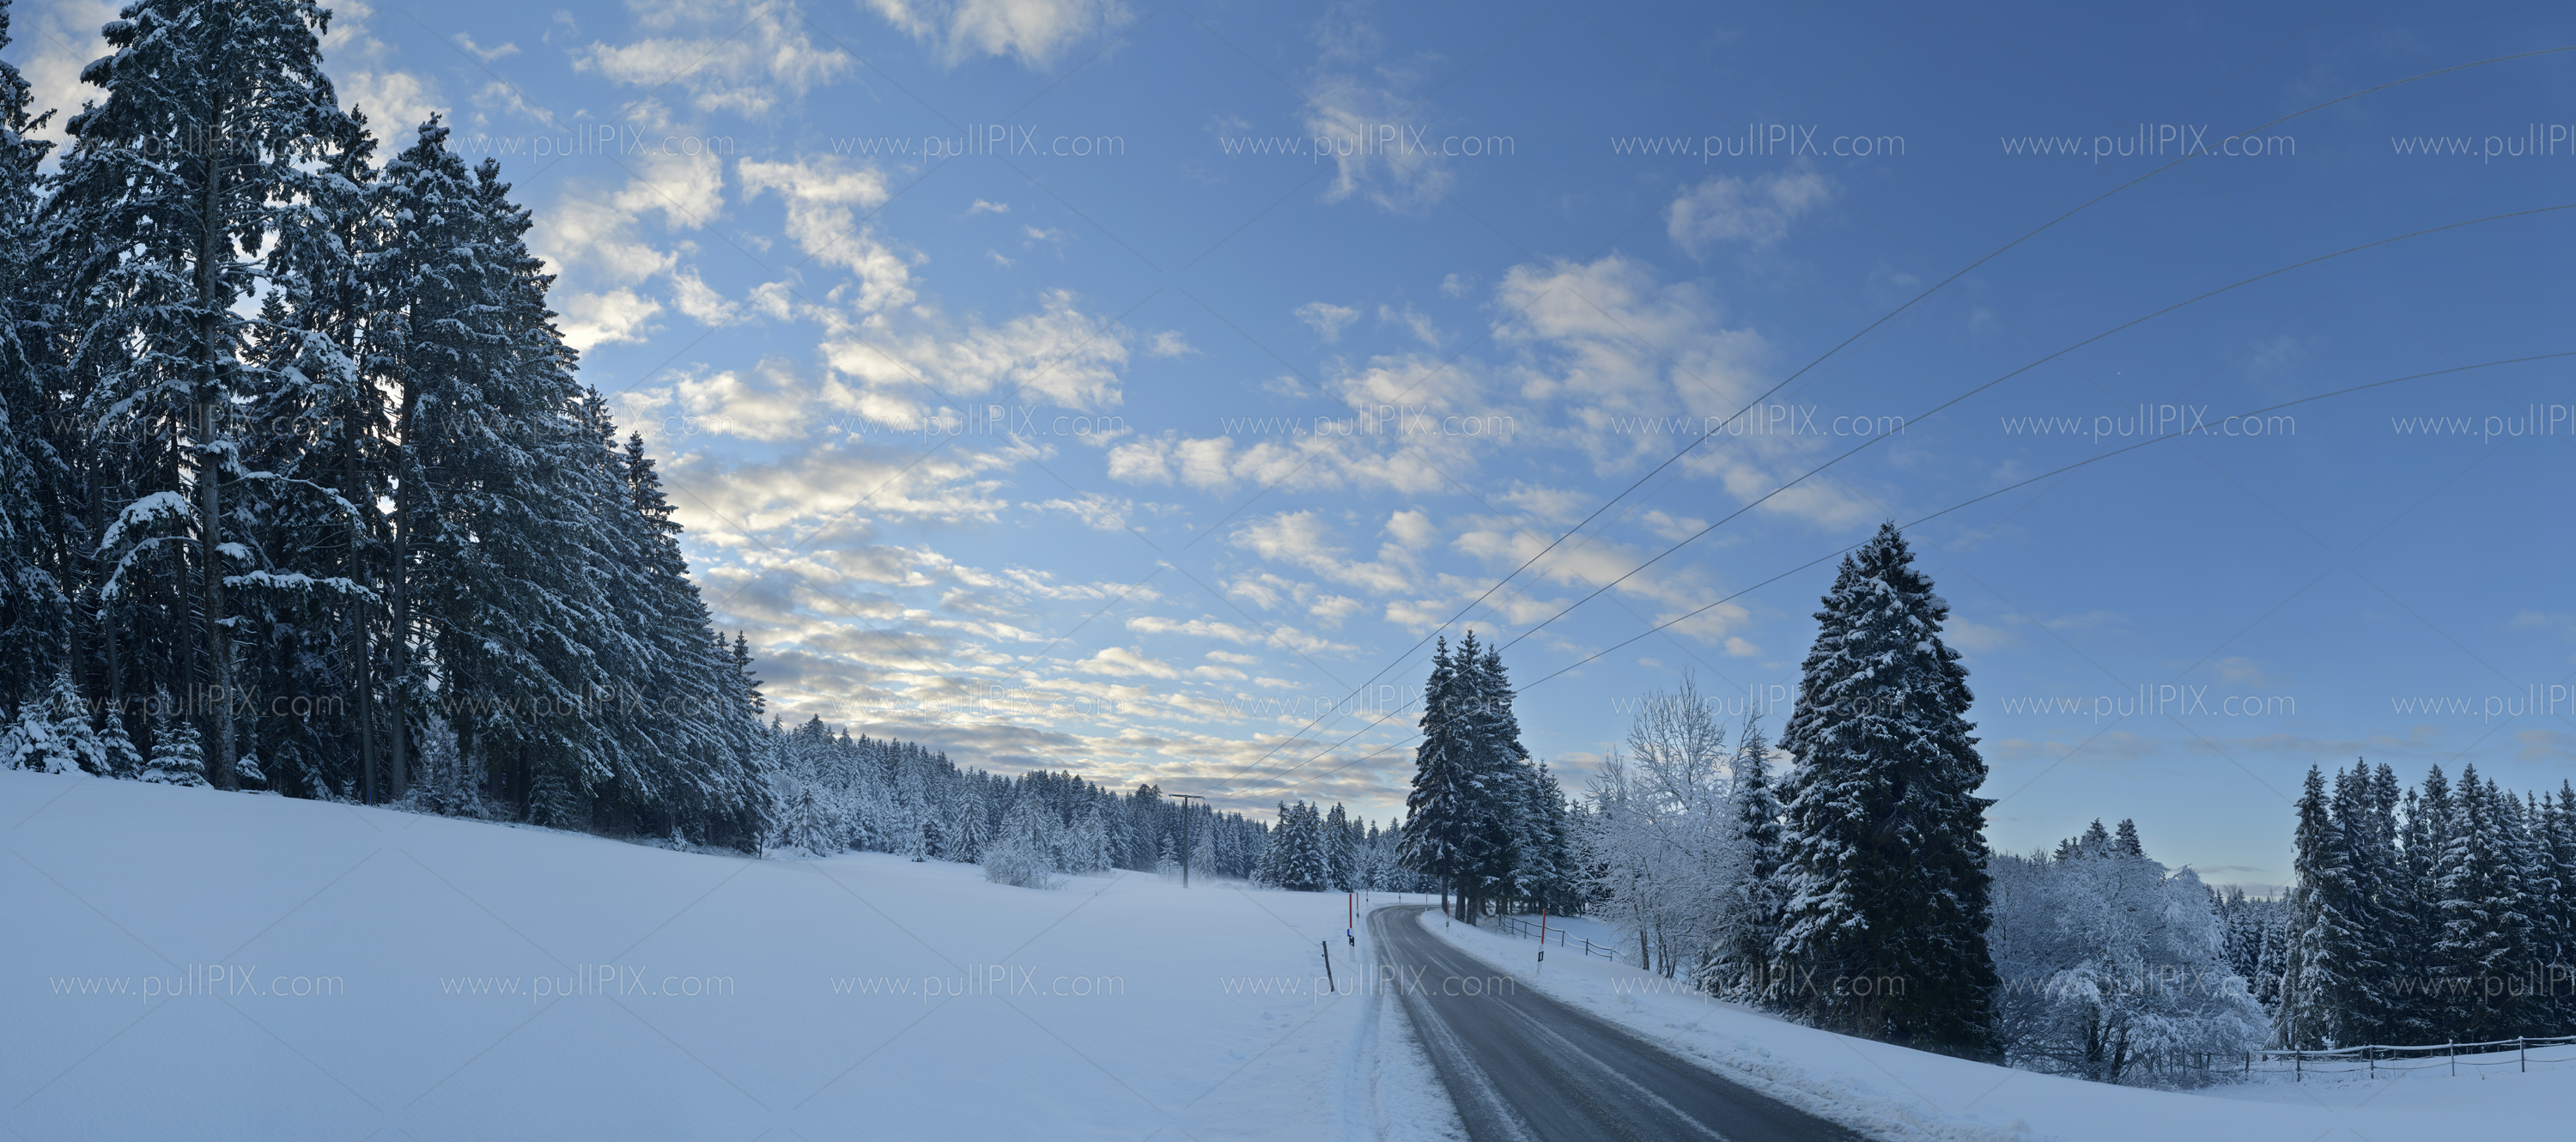 Preview winterliches allgaeu_16.jpg